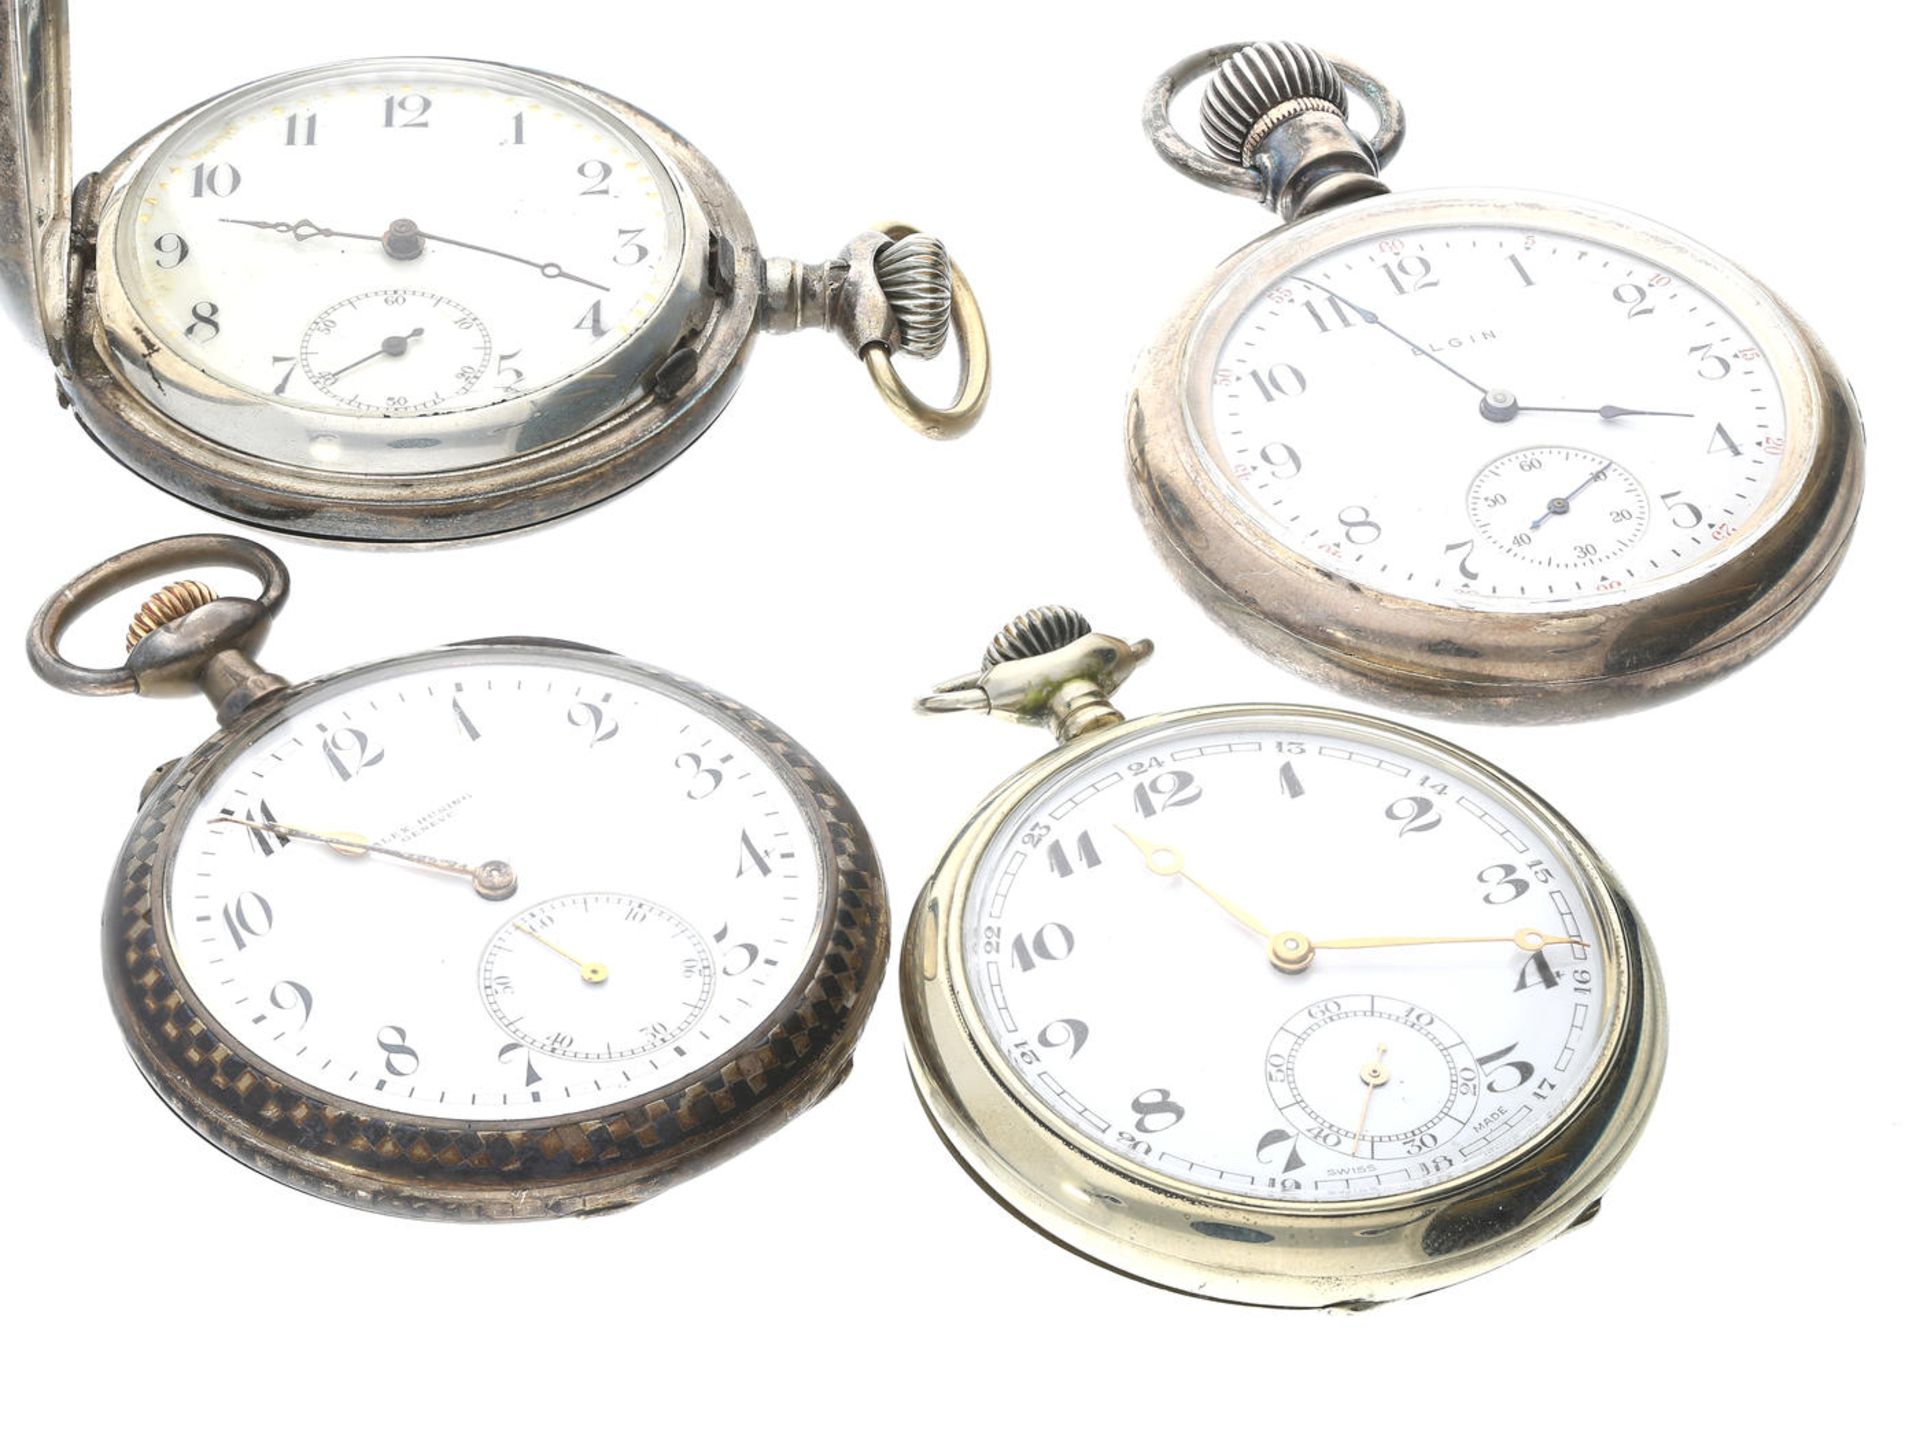 Taschenuhr: Konvolut von 4 antiken Taschenuhren um 1900-1930, dabei eine feine Präzisionsuhr von